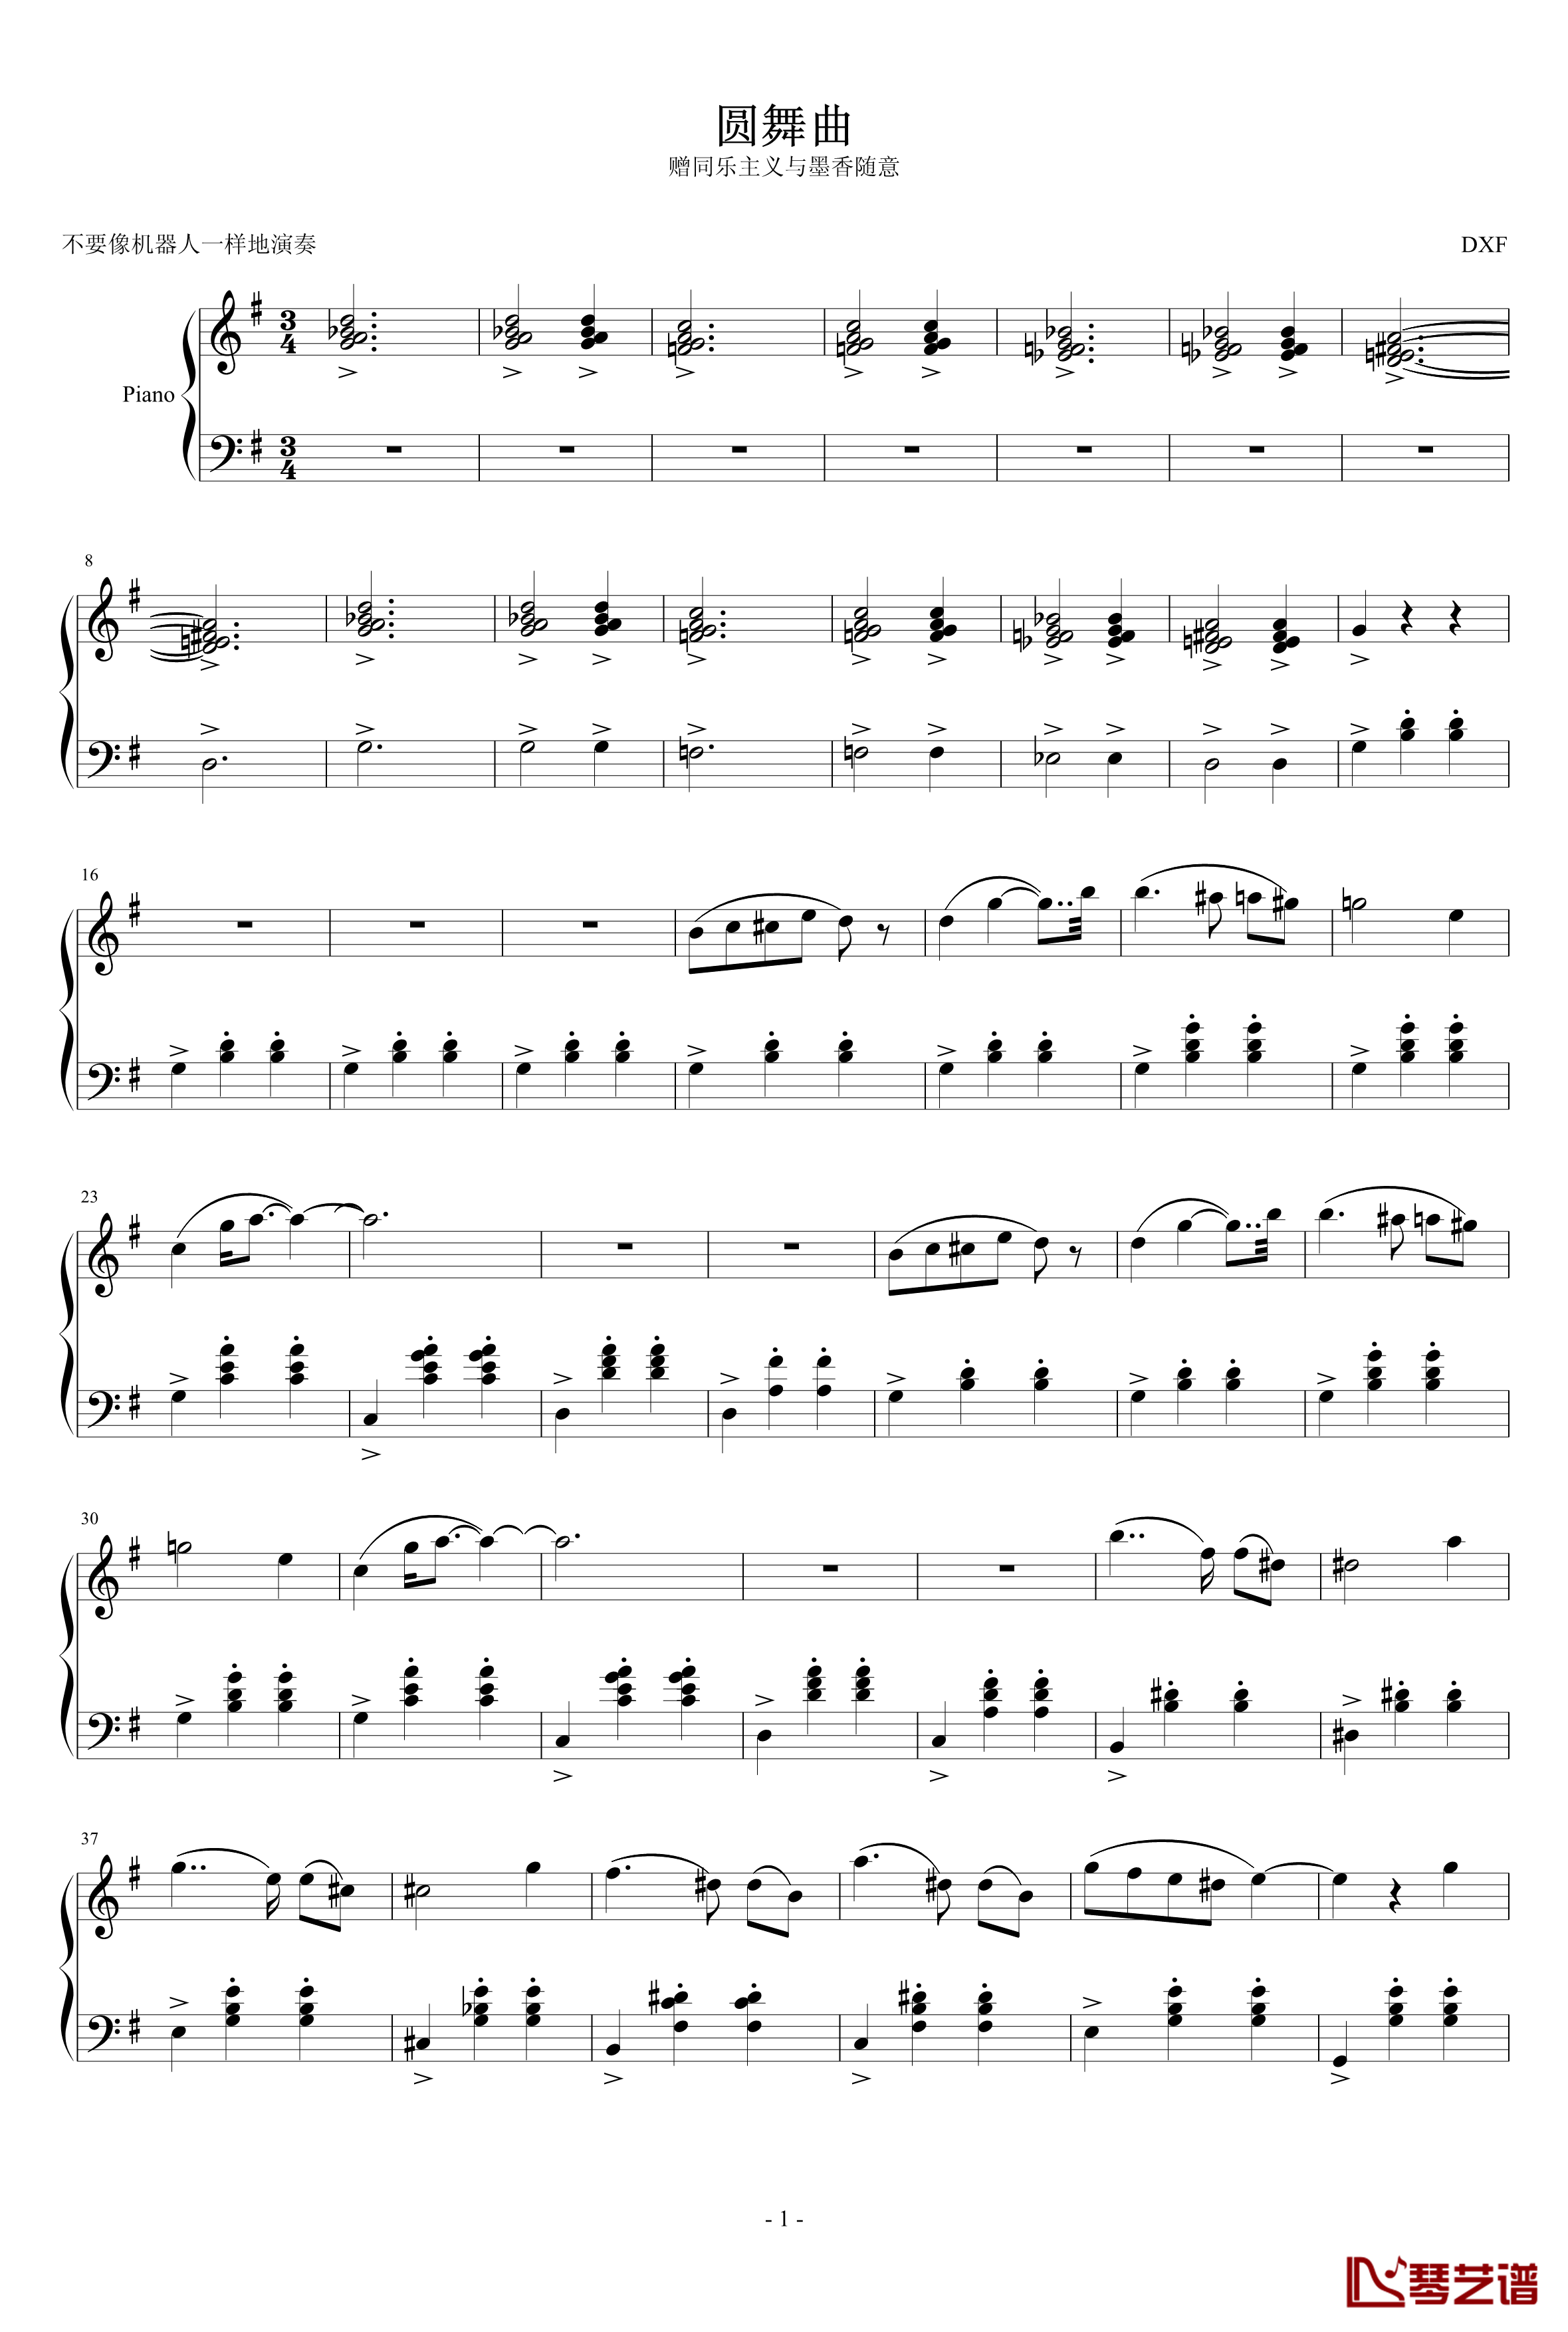 圆舞曲钢琴谱-DXF1